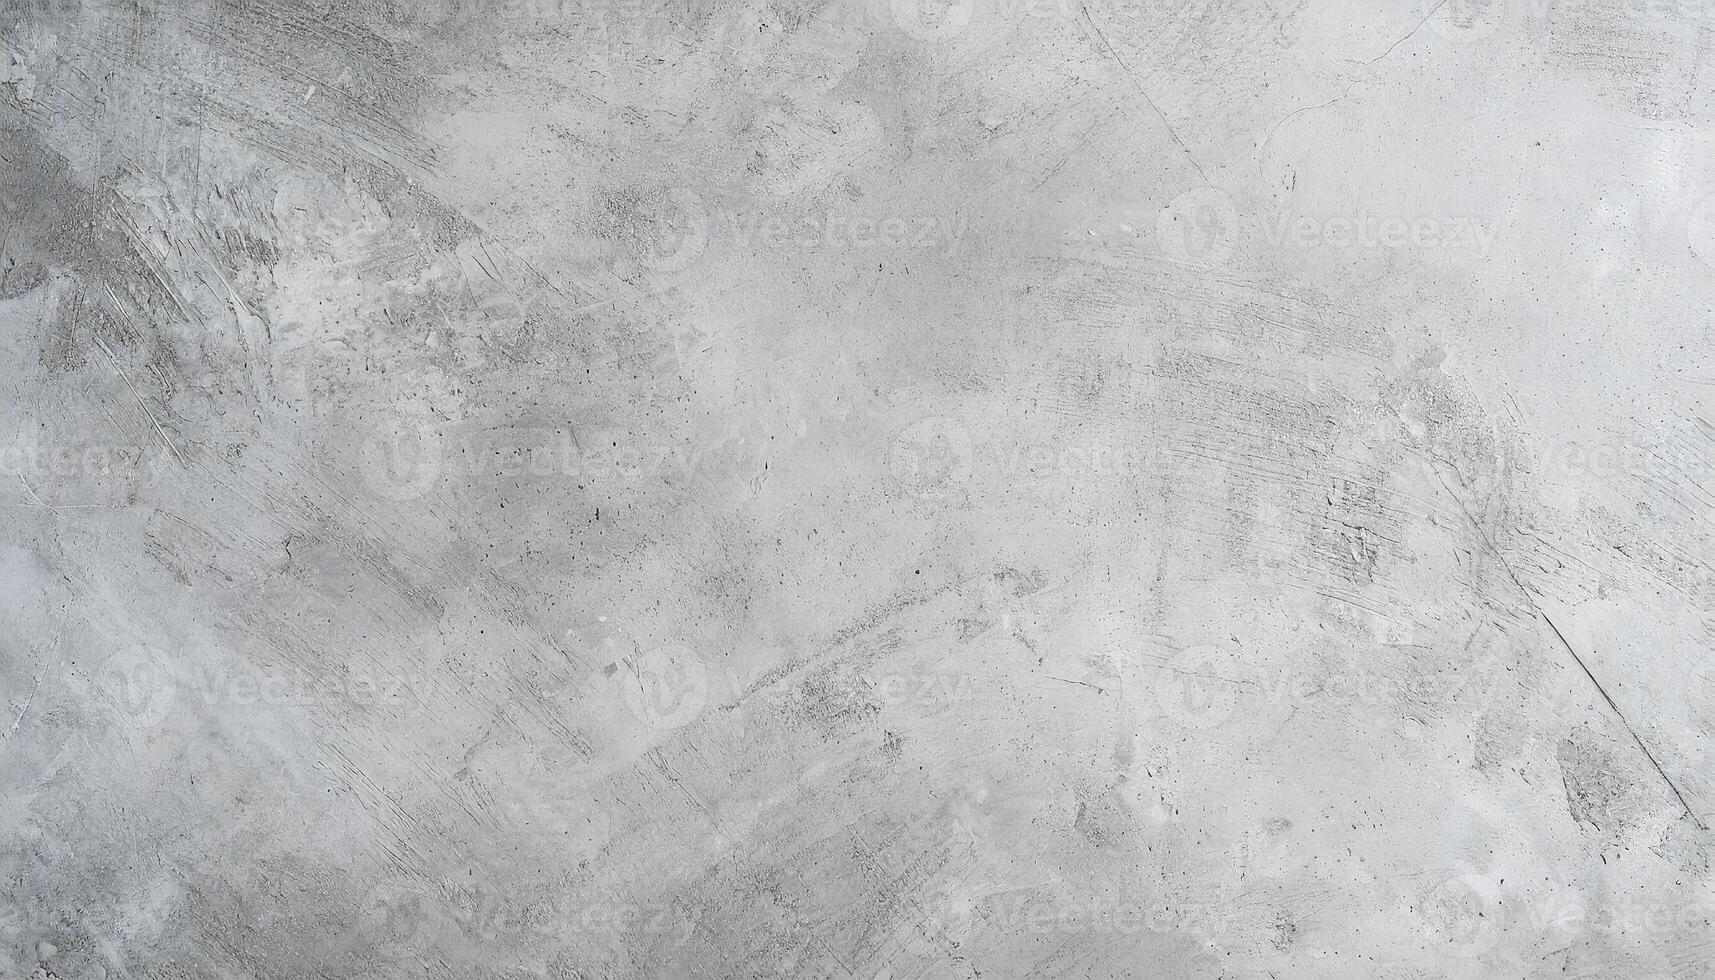 wit steen marmeren beton muur grunge voor structuur backdrop achtergrond. oud grunge texturen met krassen en scheuren. wit geschilderd cement muur, modern grijs verf kalksteen structuur achtergrond. foto